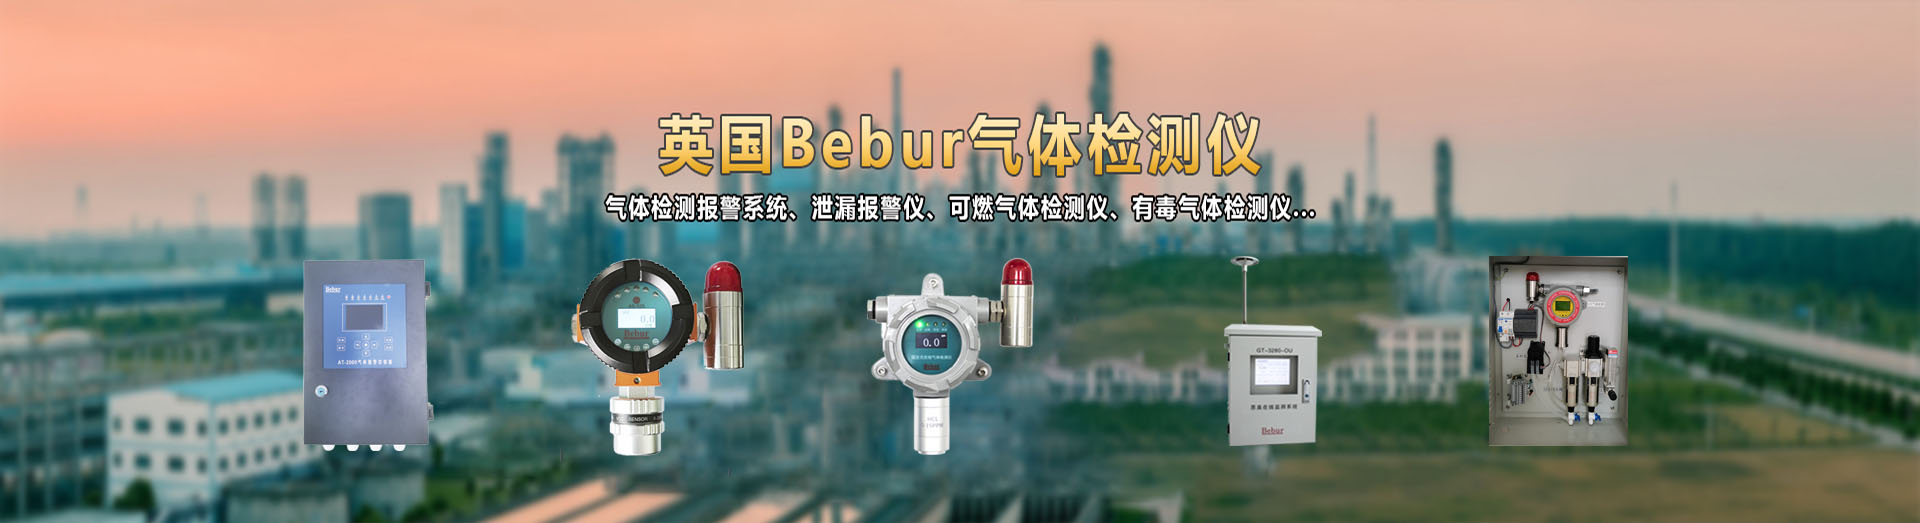 英国Bebur品牌进口氟化氢检测仪系列产品